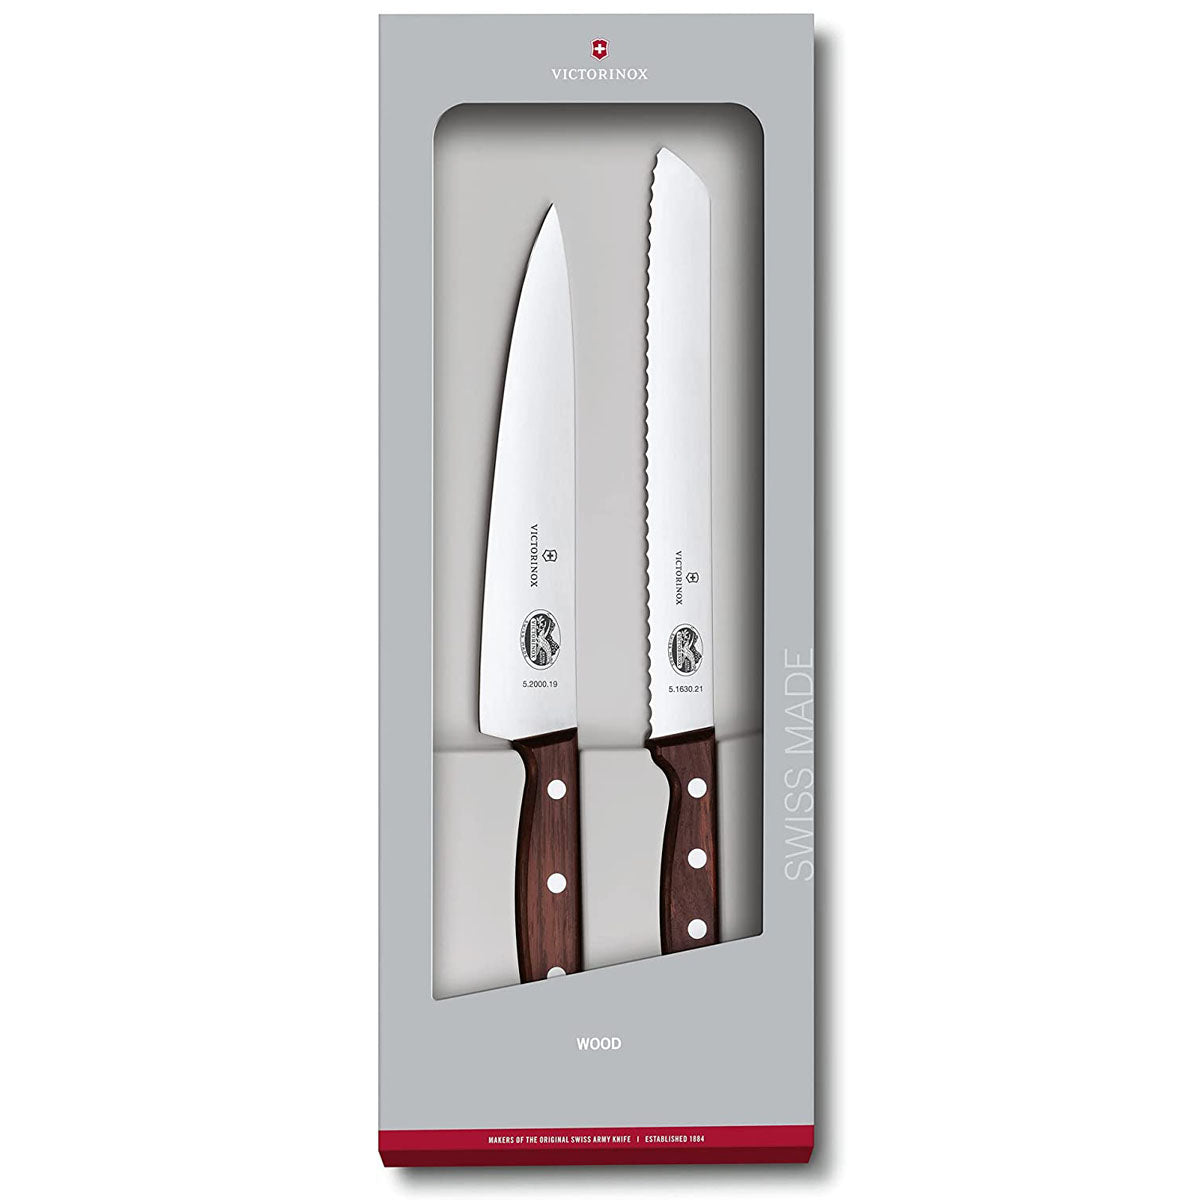 2 Pc Kitchen Knife Set